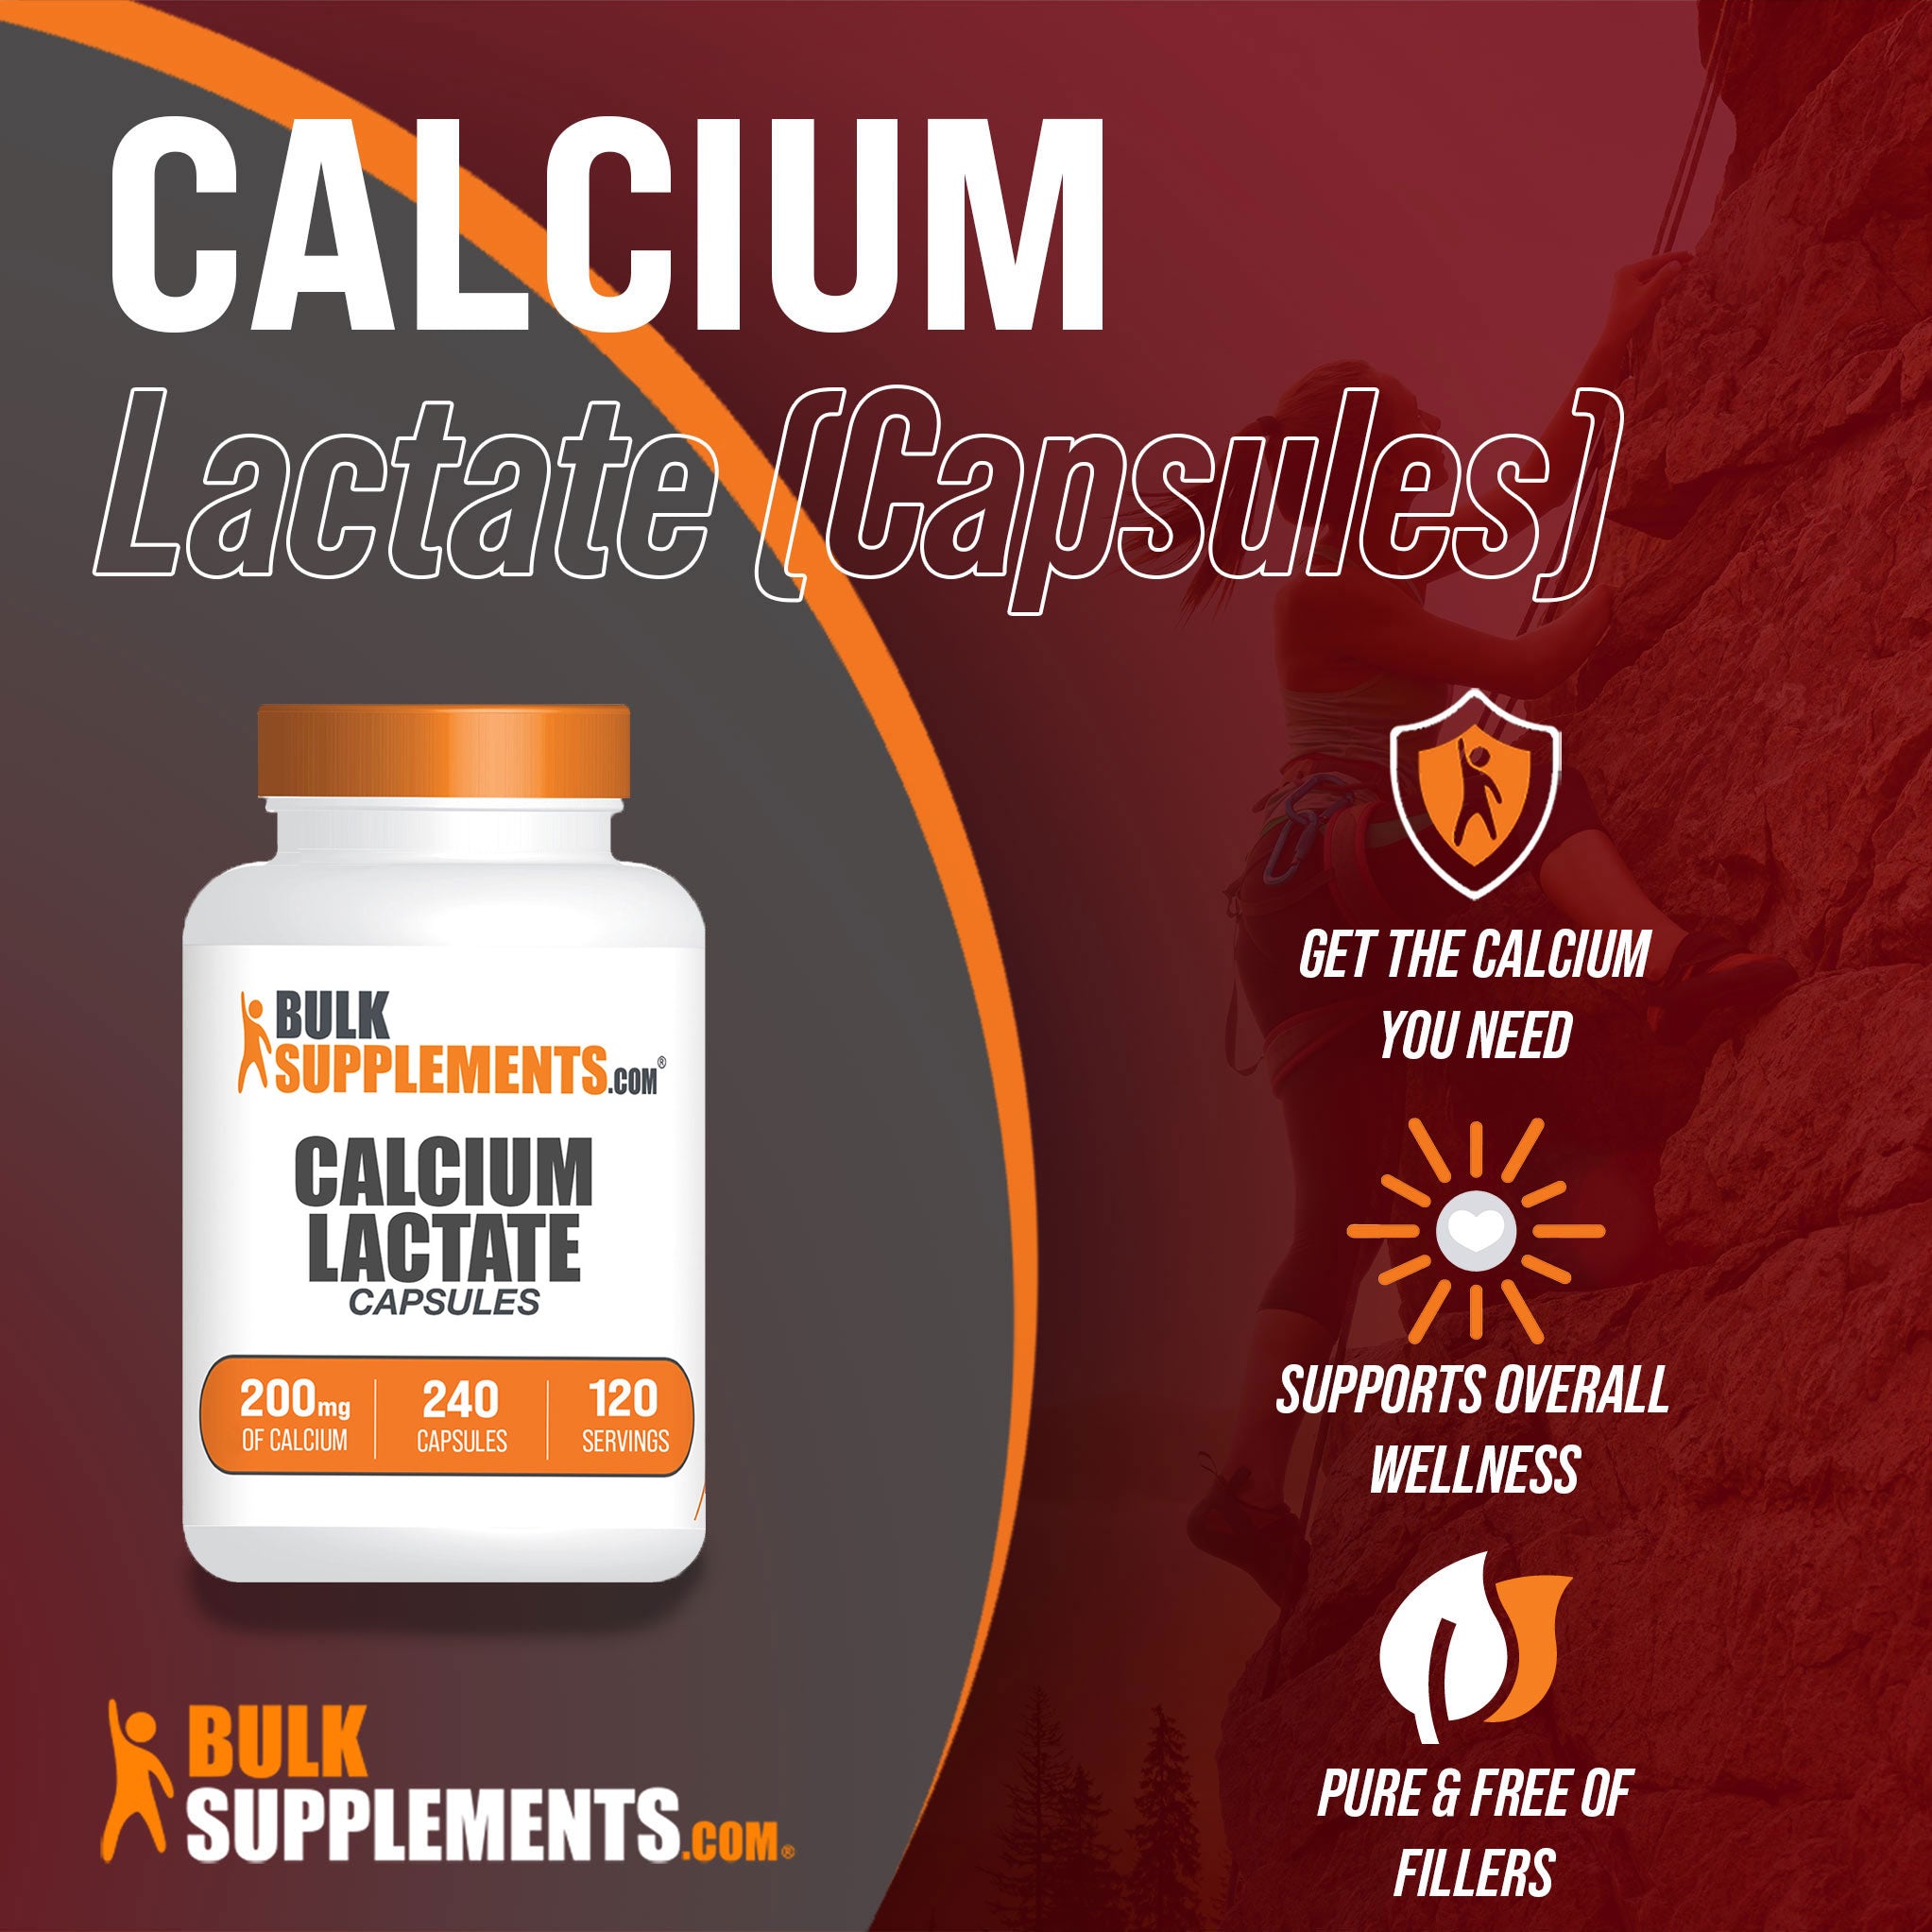 Calcium Lactate Benefits